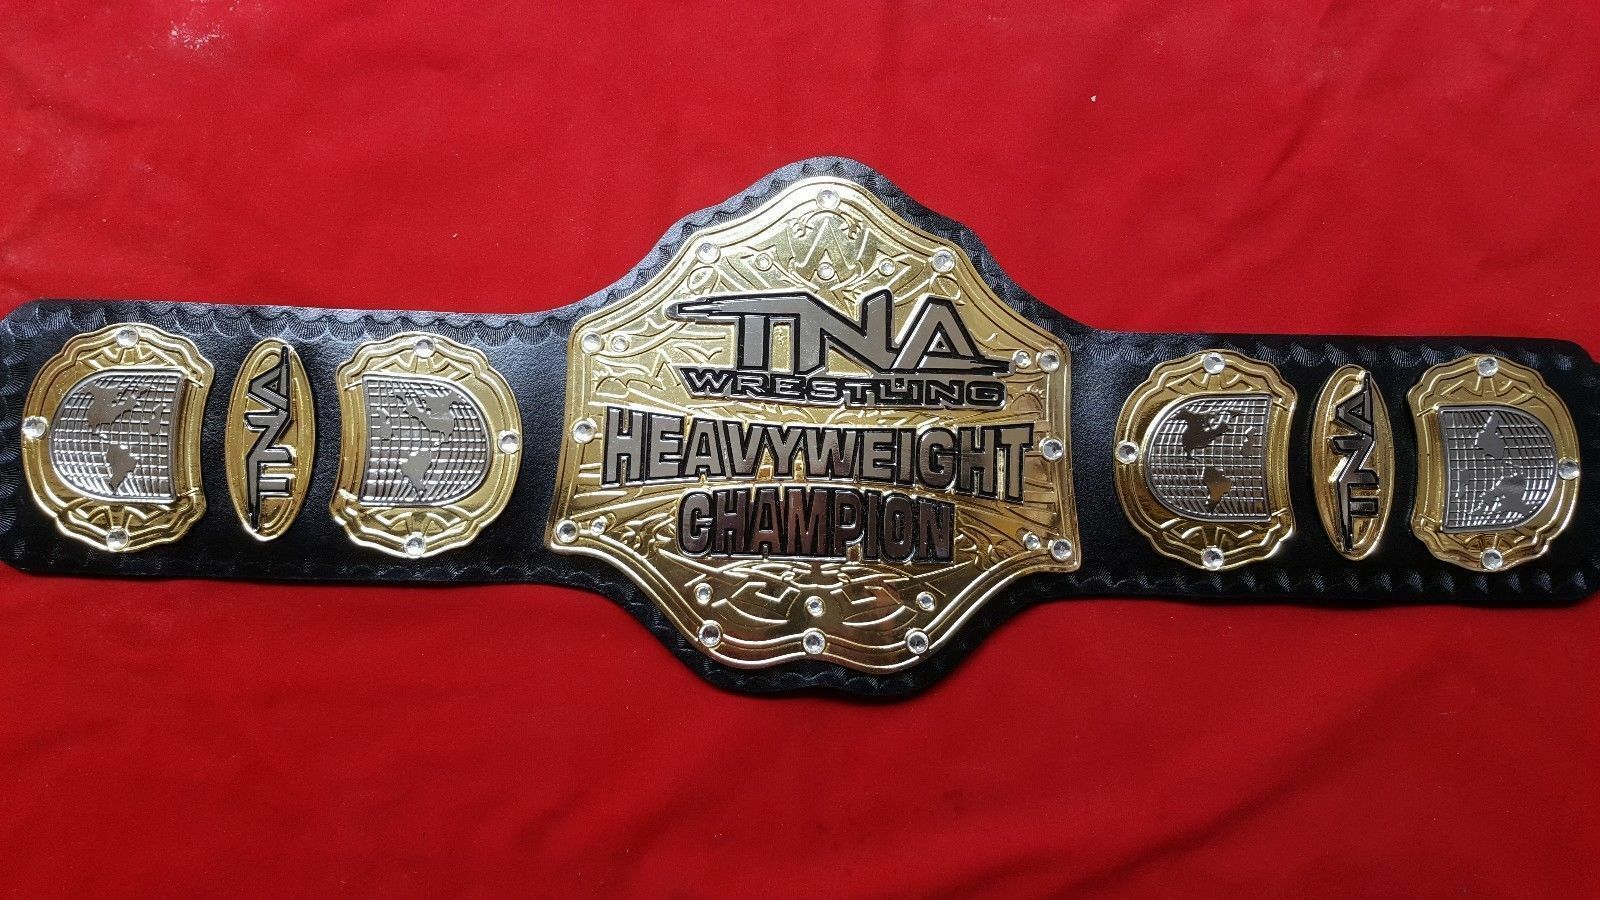 wrestling championship belts